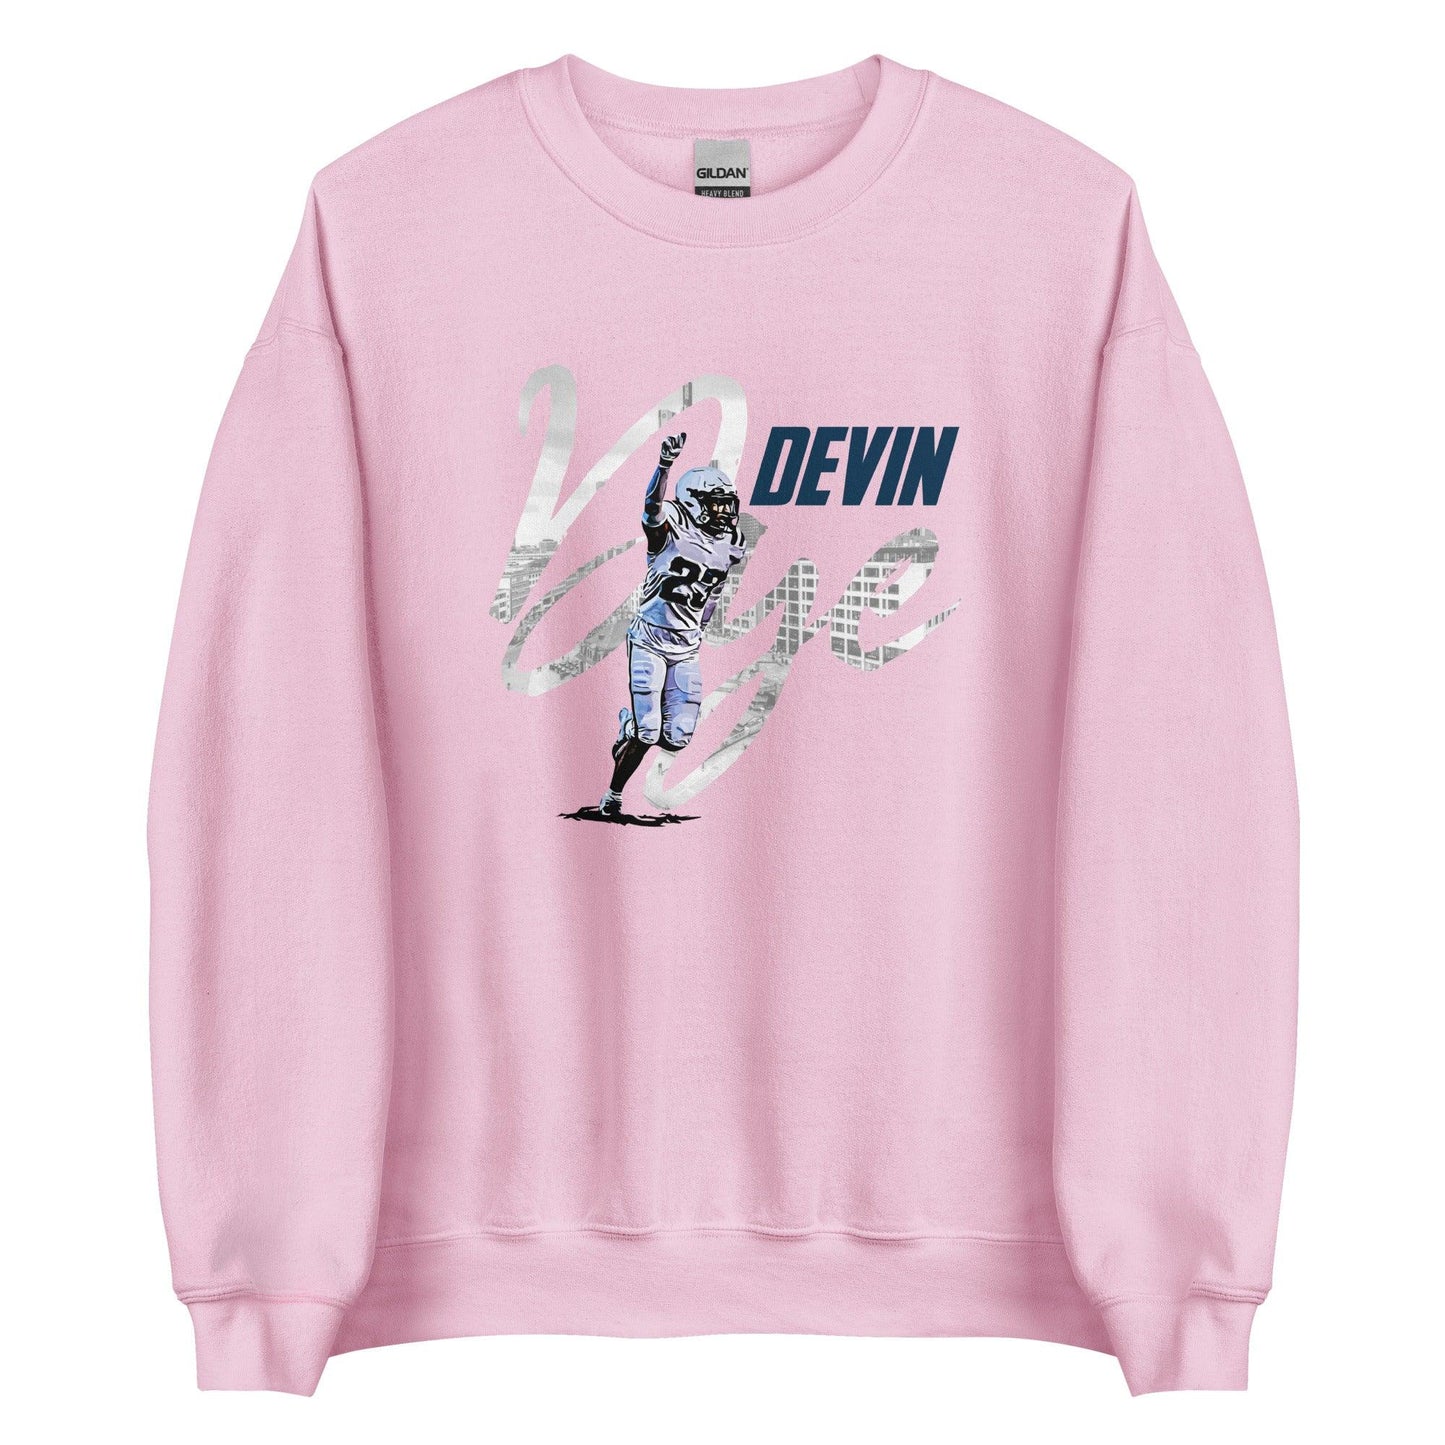 Devin Dye "Gameday" Sweatshirt - Fan Arch